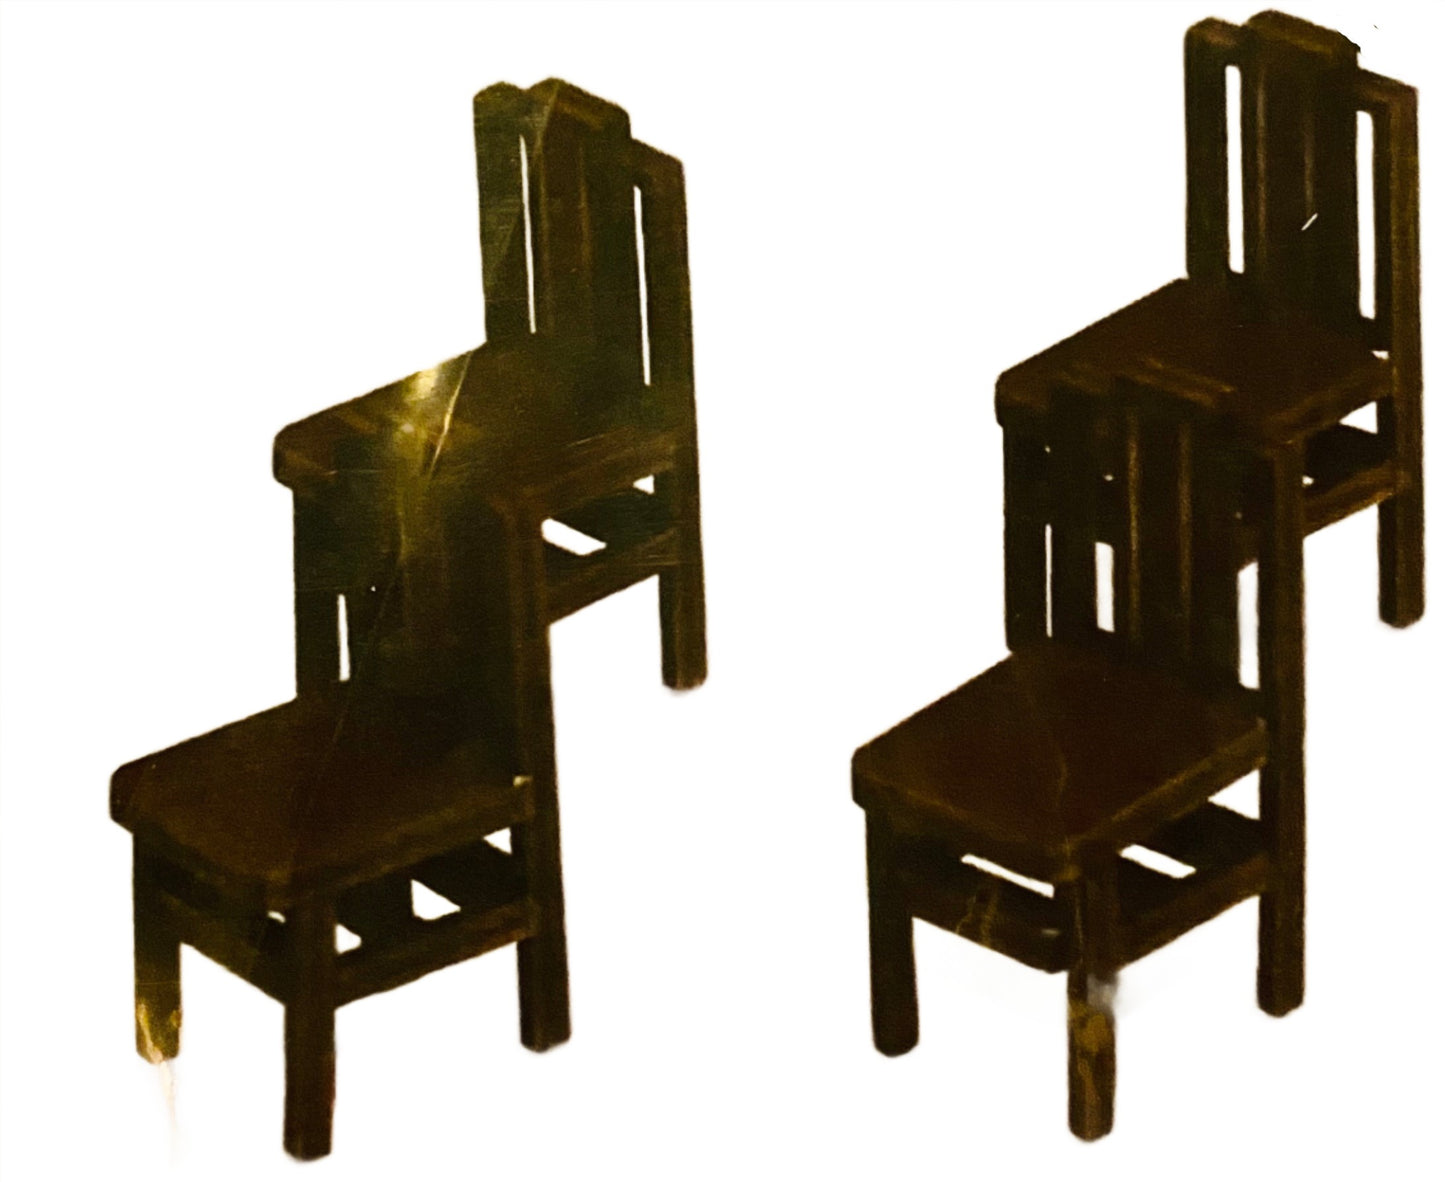 Bausatz für Stühle mit quadratischer Rückenlehne aus dem 18. Jahrhundert im Maßstab 1:48